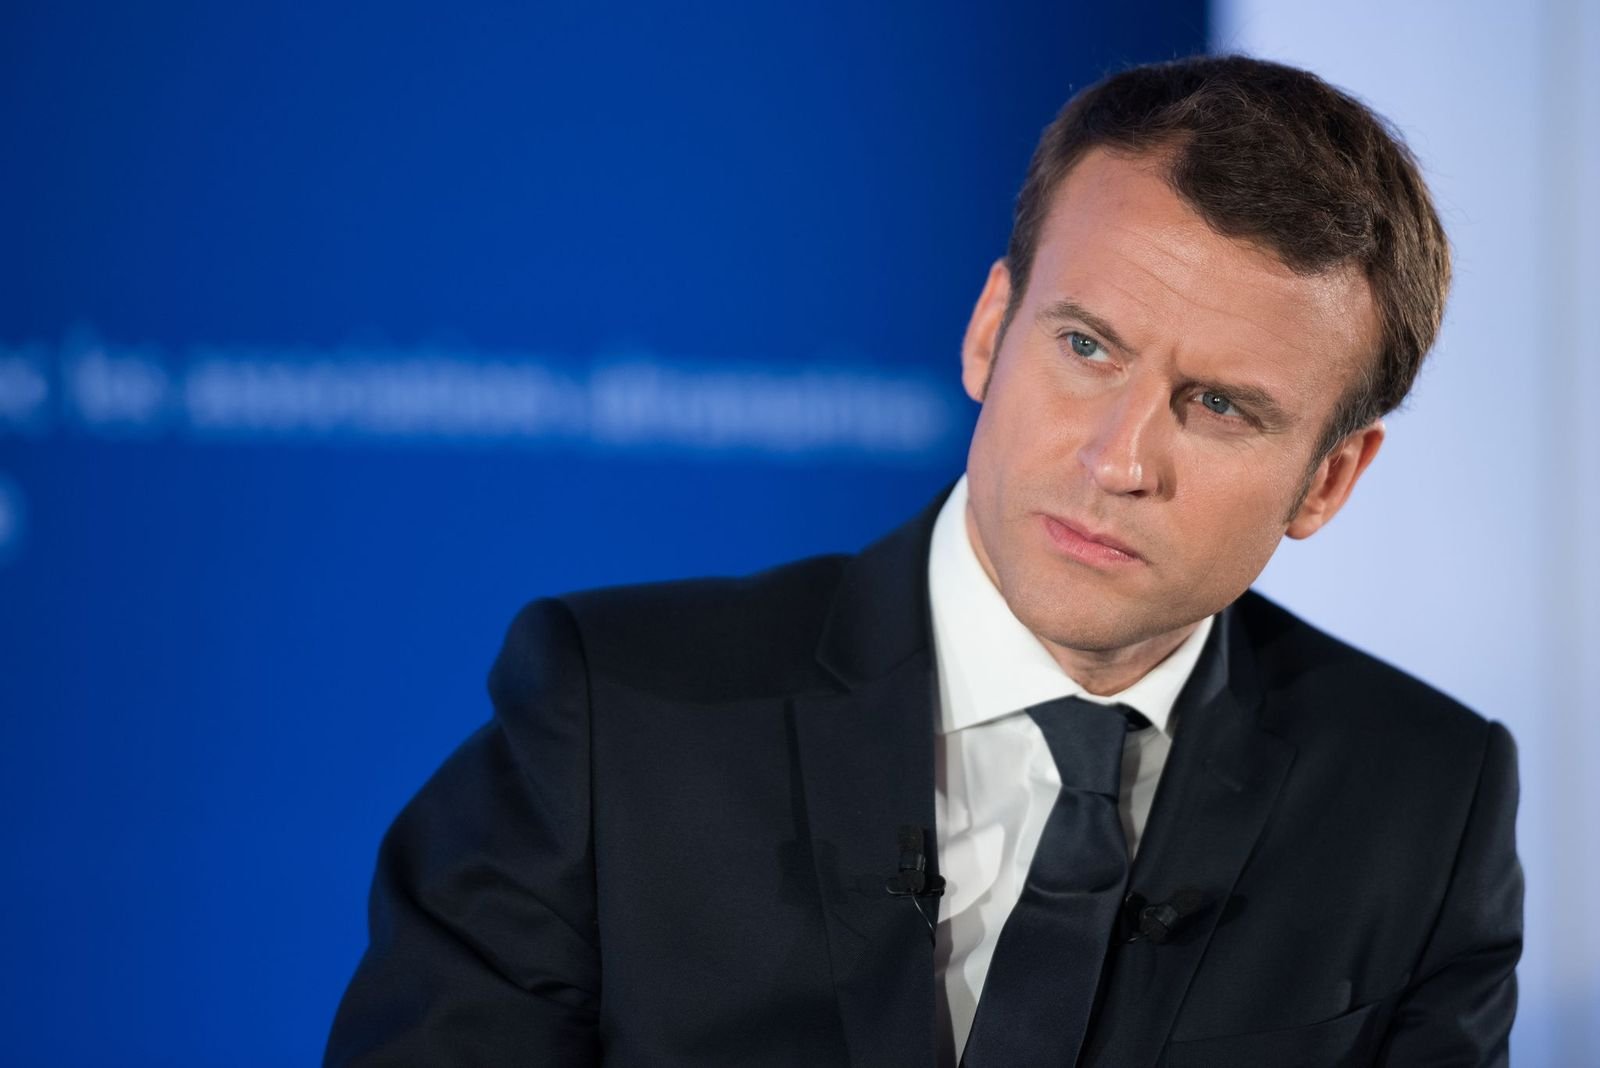 Le président de la République Emmanuel Macron | Photo : Getty Images